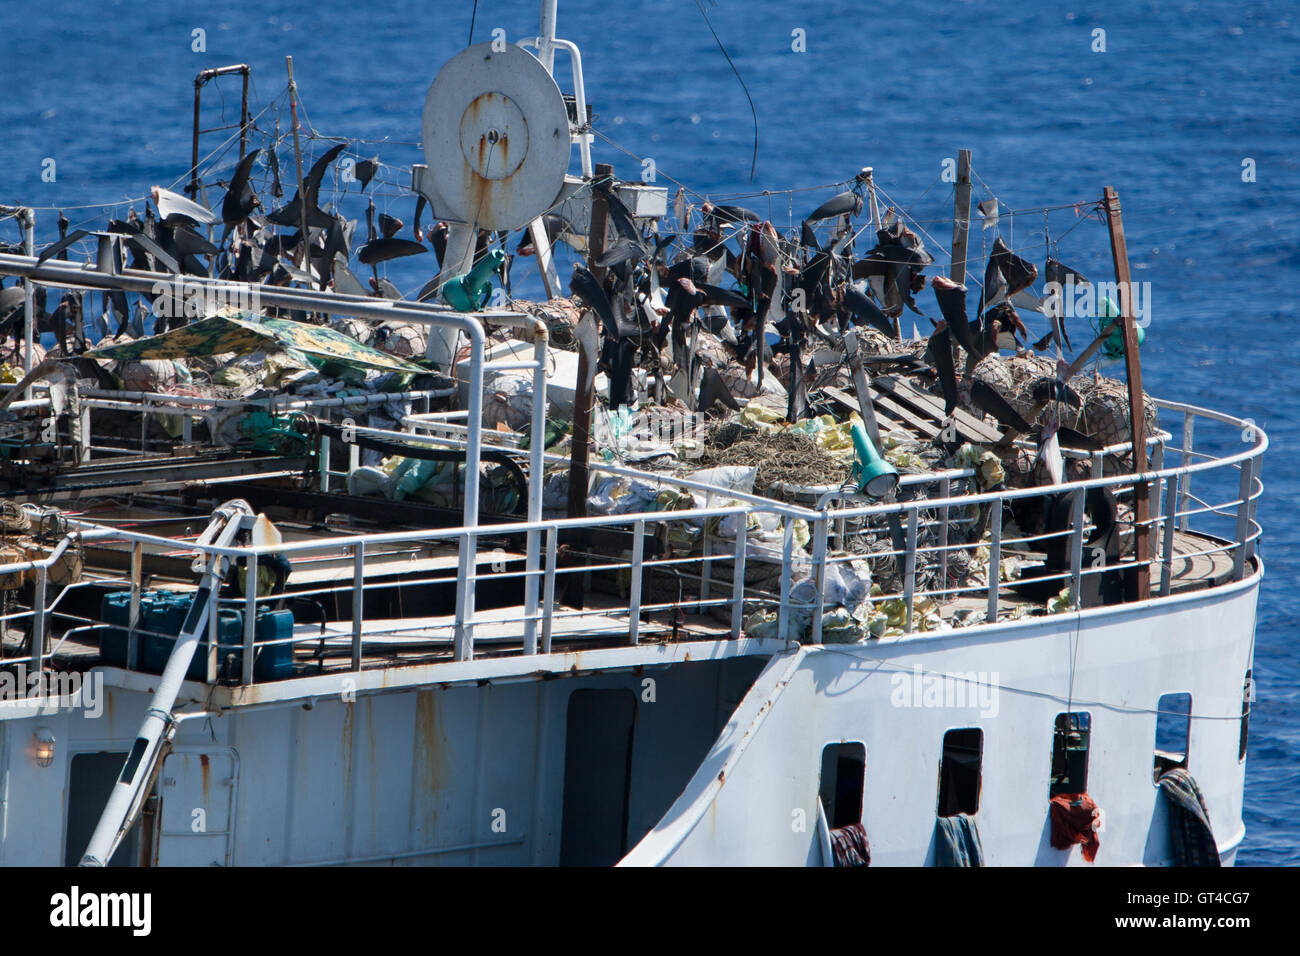 Barco de pesca de aletas de tiburón ilegal cerca de la isla Ascensión en el Atlántico Foto de stock